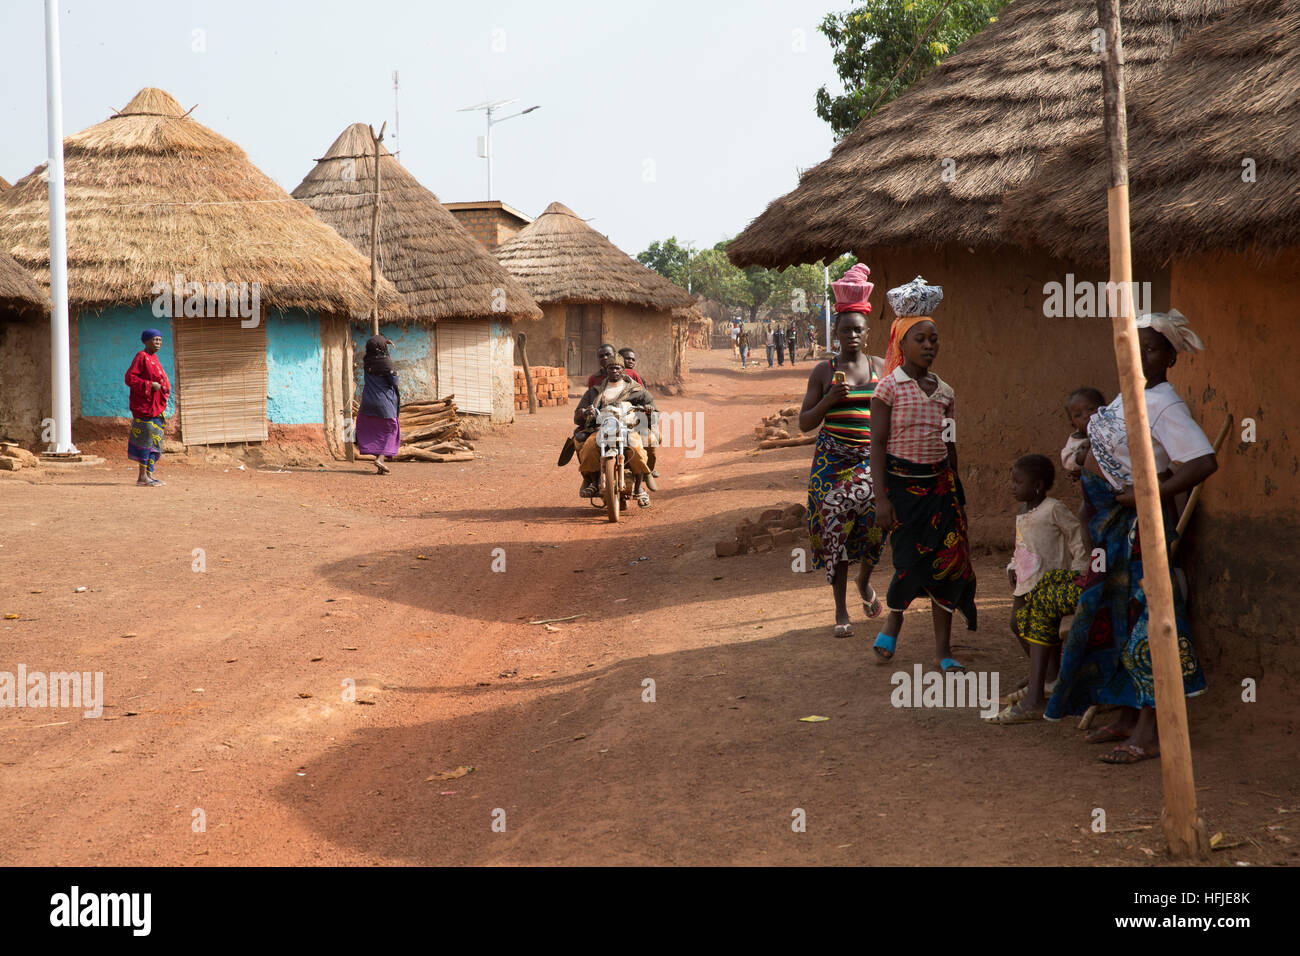 Gbderedou Baranama, Guinea, 2. Mai 2015; junge Menschen verlassen in den frühen Morgen für die Sanana Minen, 12 km entfernt. Stockfoto